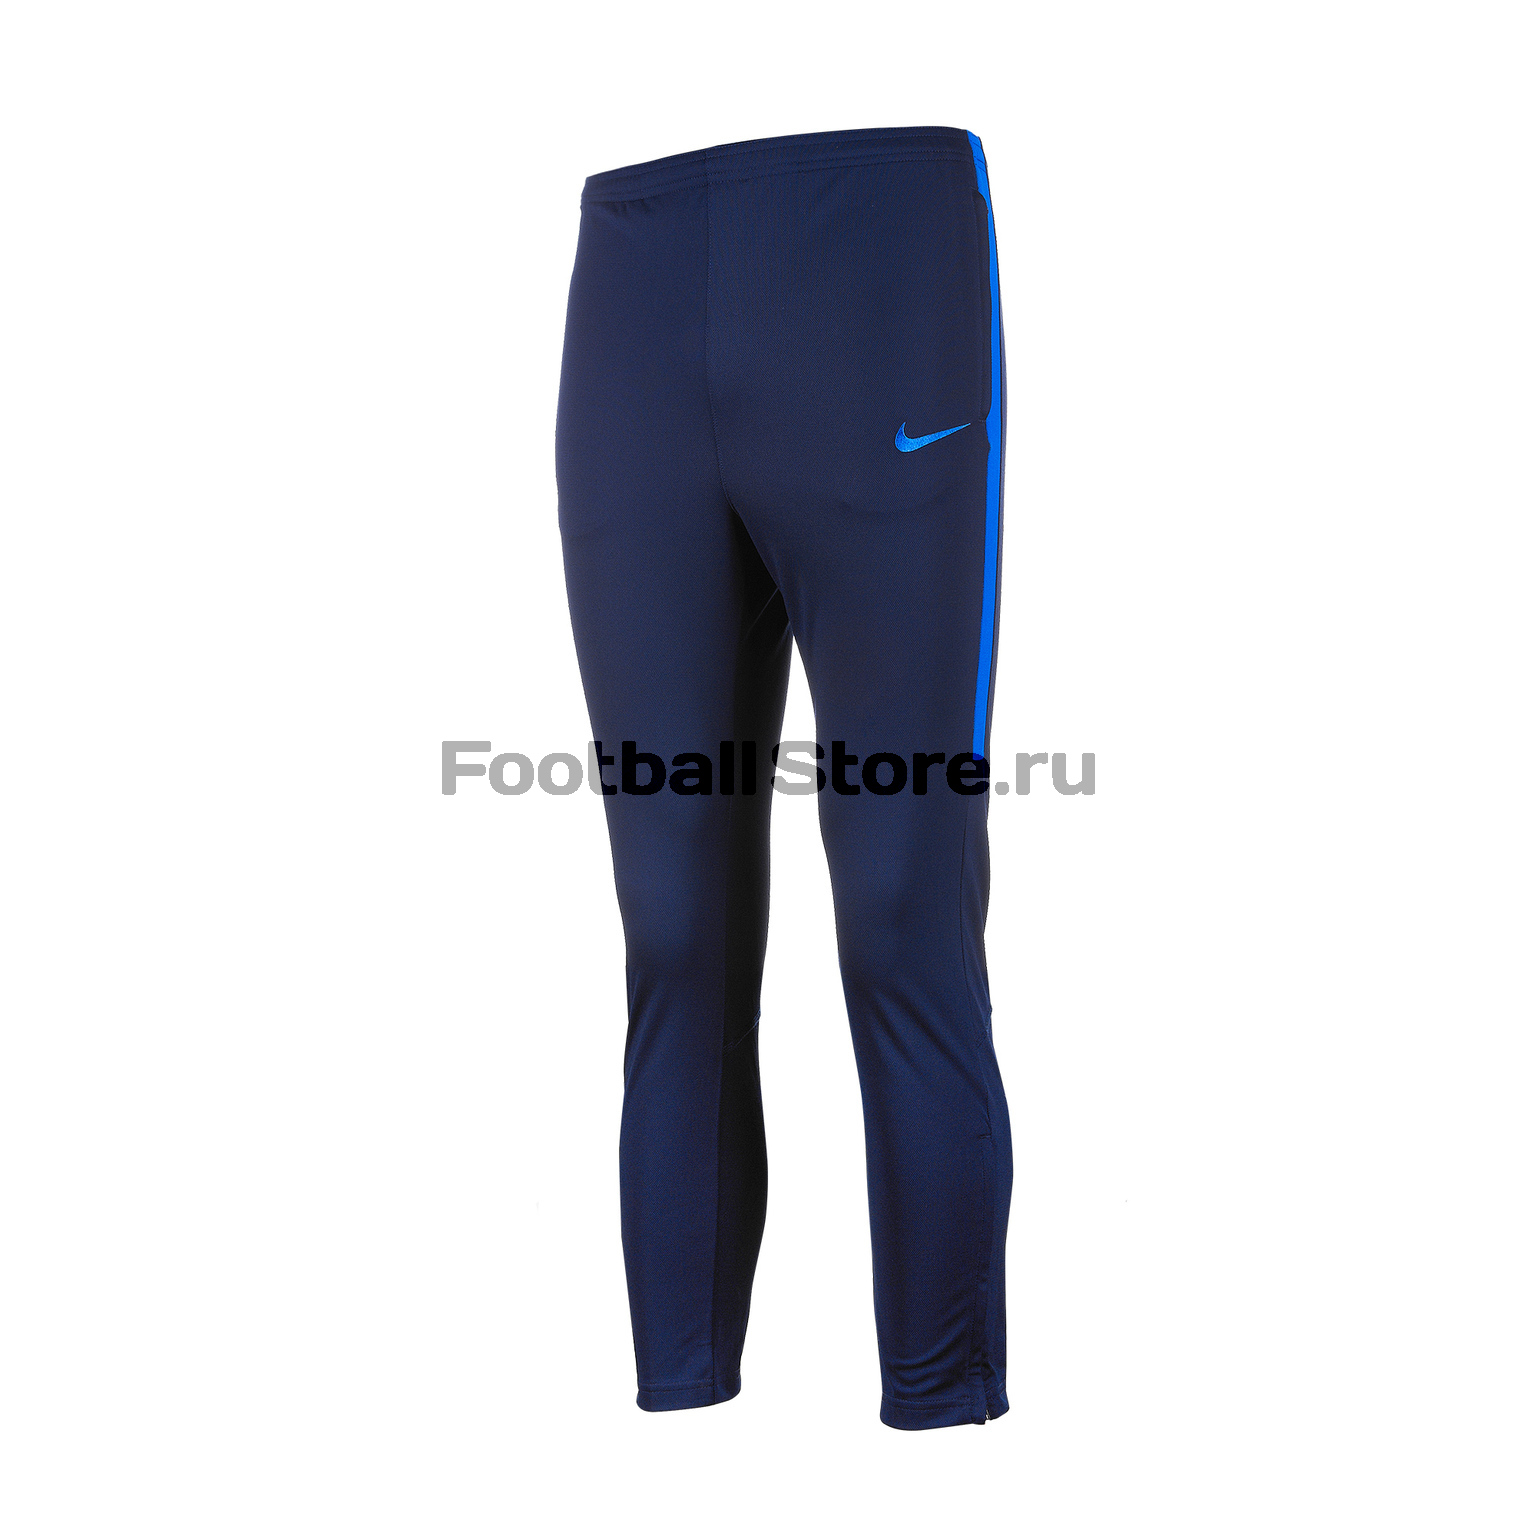 Костюм спортивный подростковый Nike Dry Academy TRK Suit 844714-458